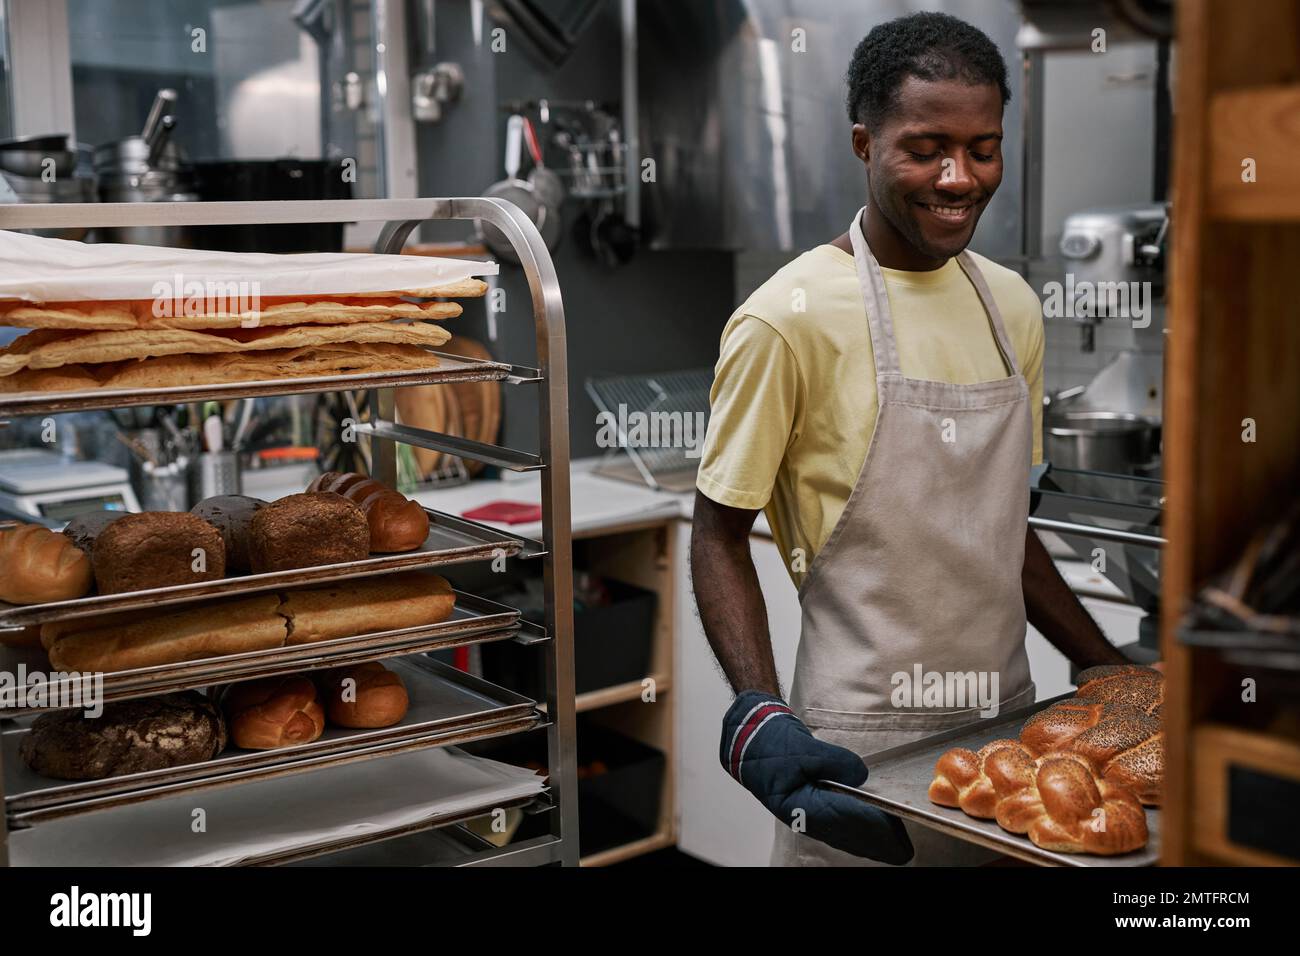 Smiling man enjoying working in bakery Stock Photo